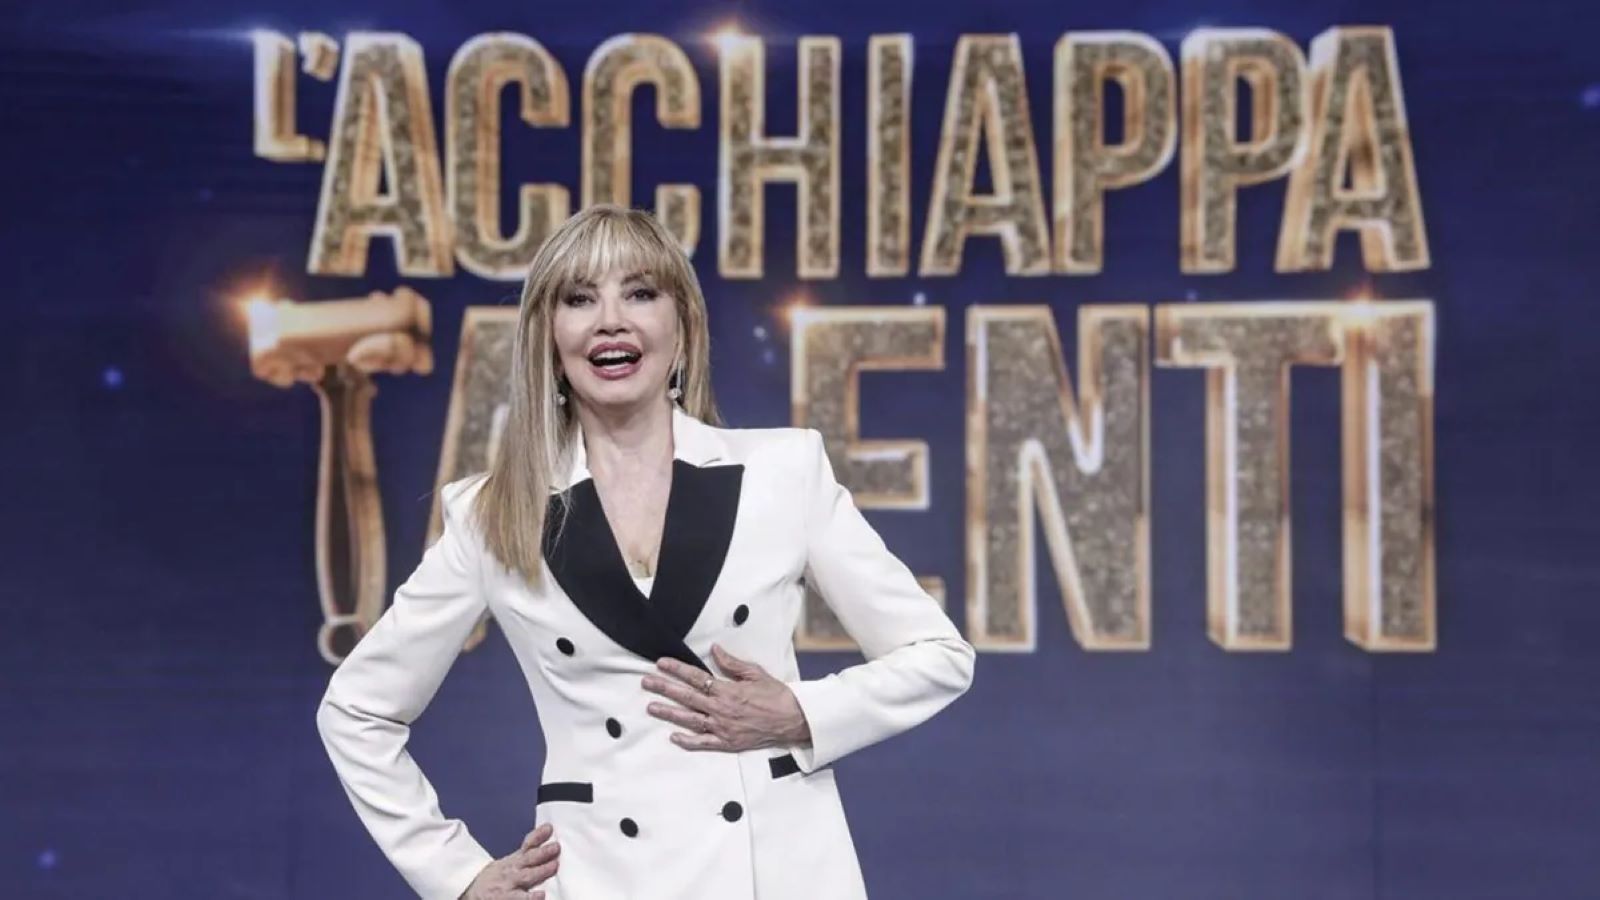 L'AcchiappaTalenti stasera su Rai 1: anticipazioni e ospiti del talent di Milly Carlucci